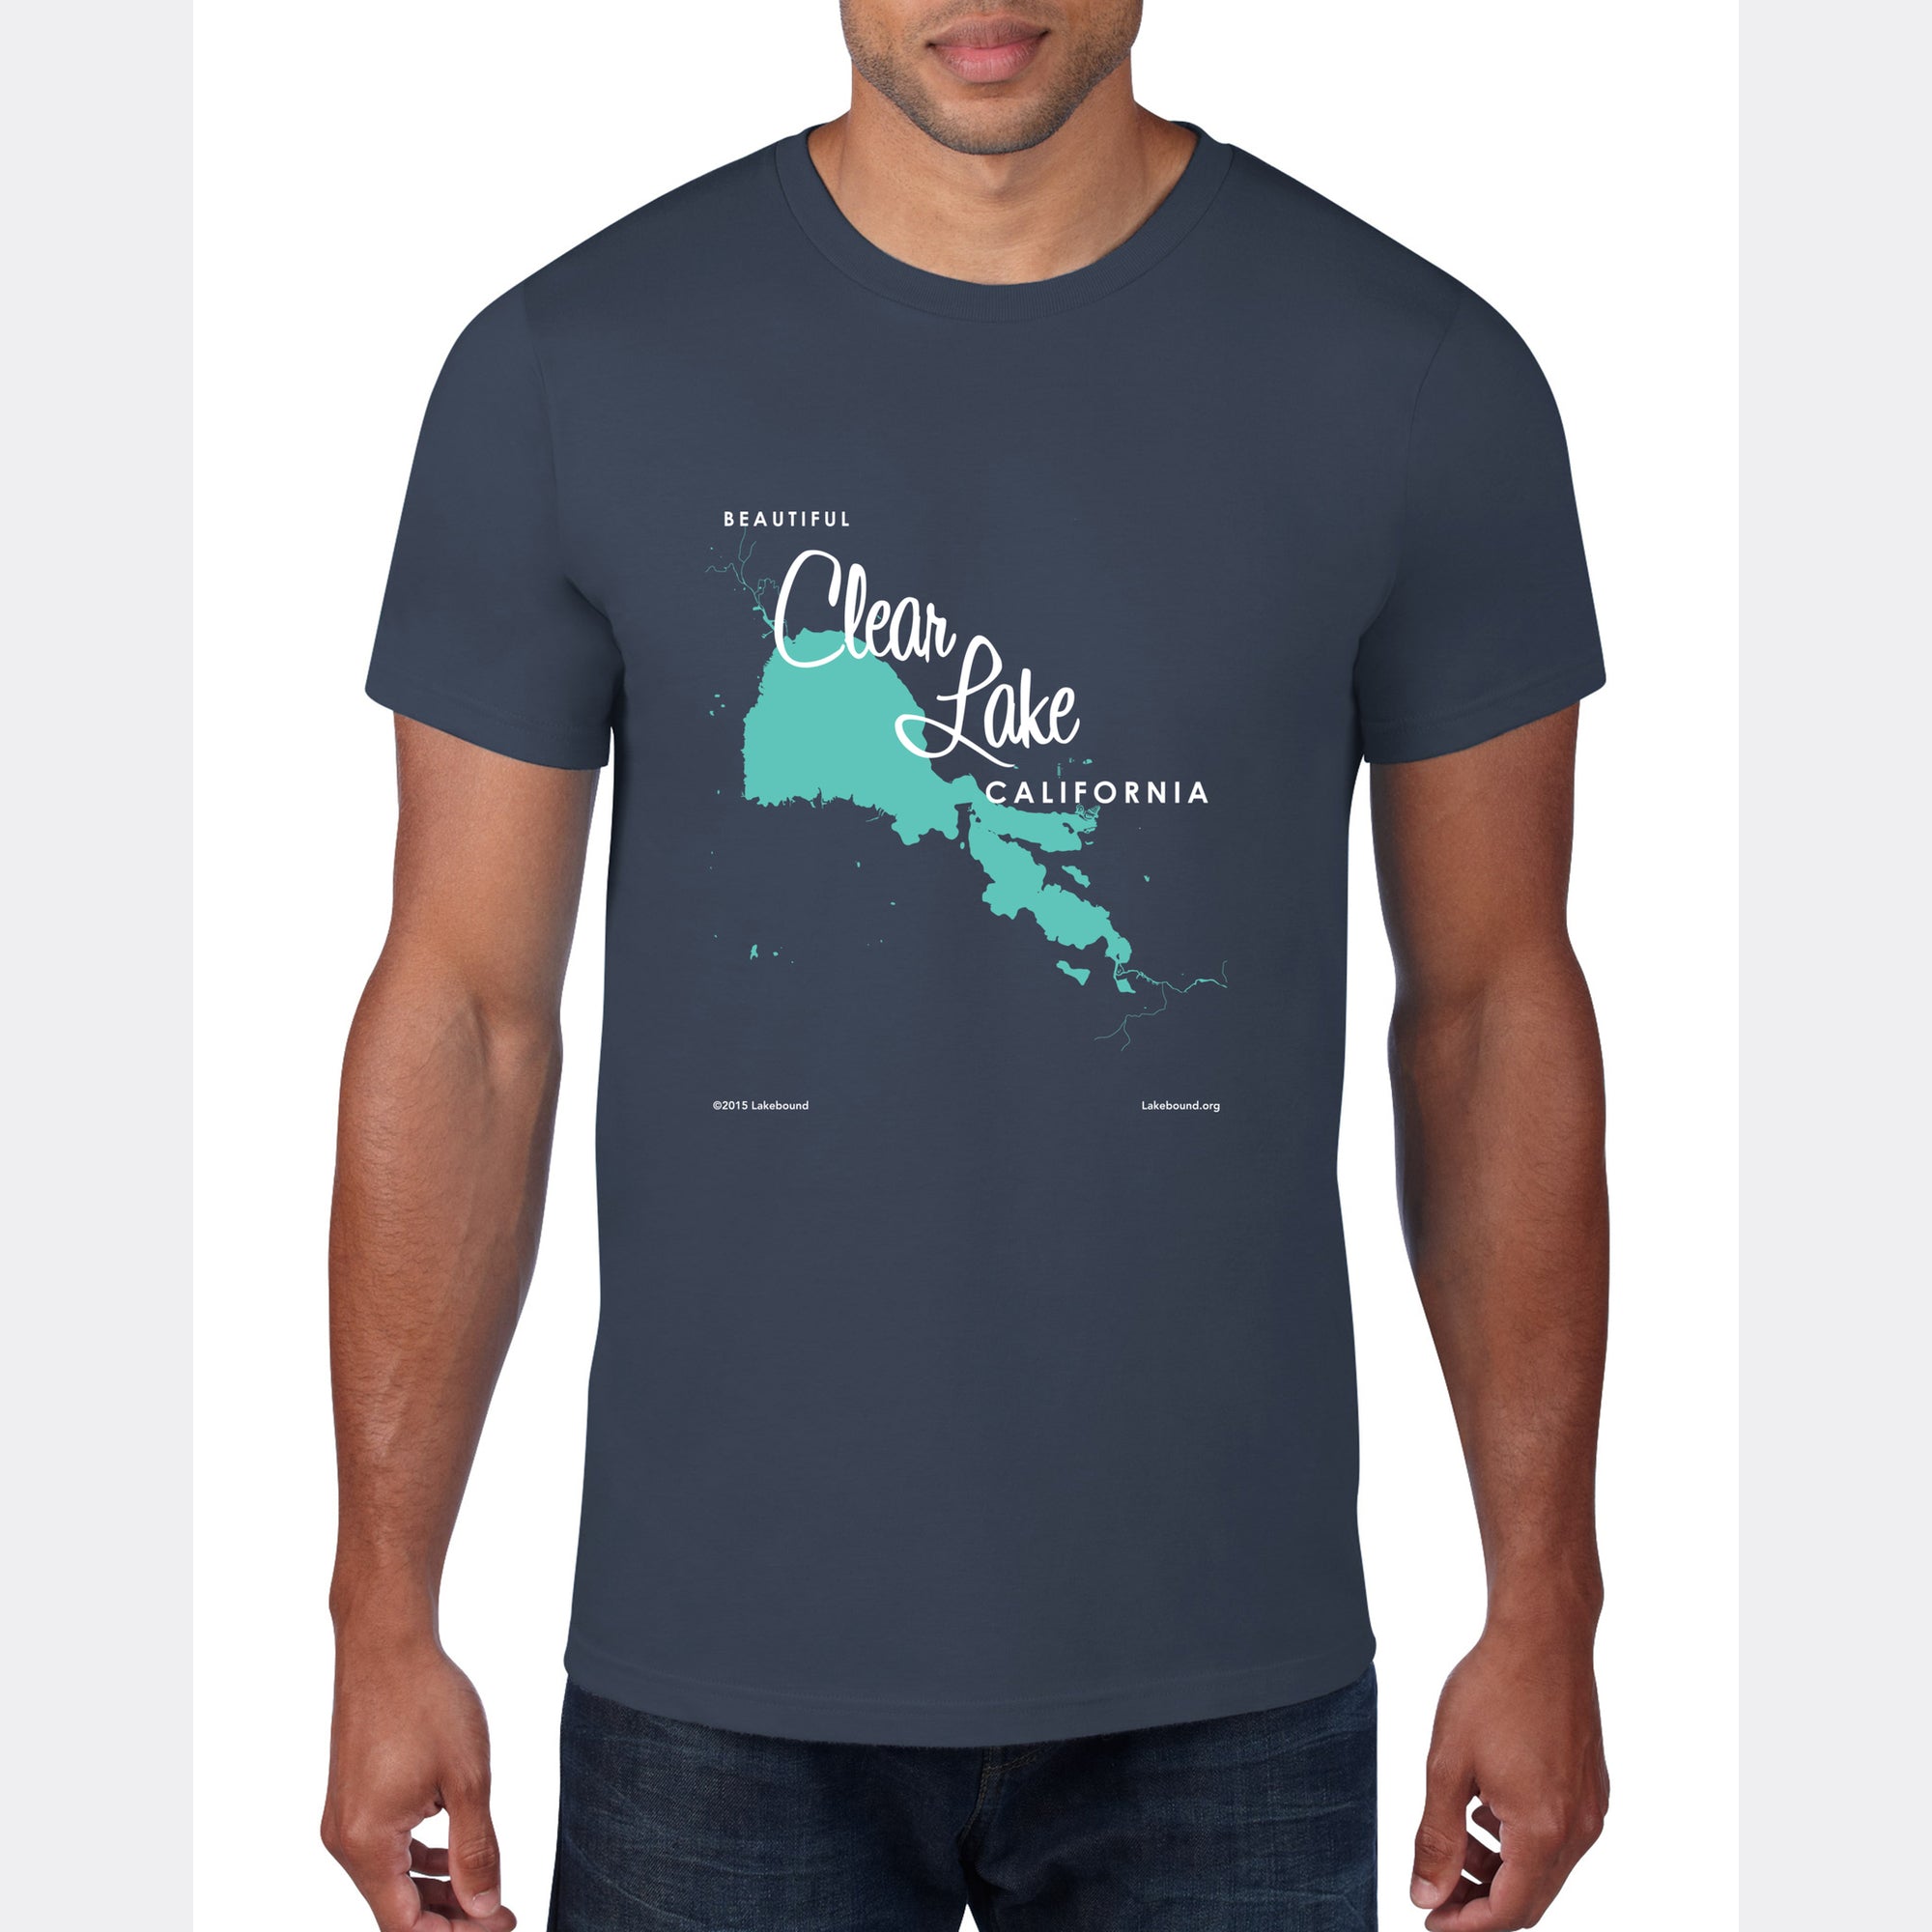 Clear Lake California, T-Shirt